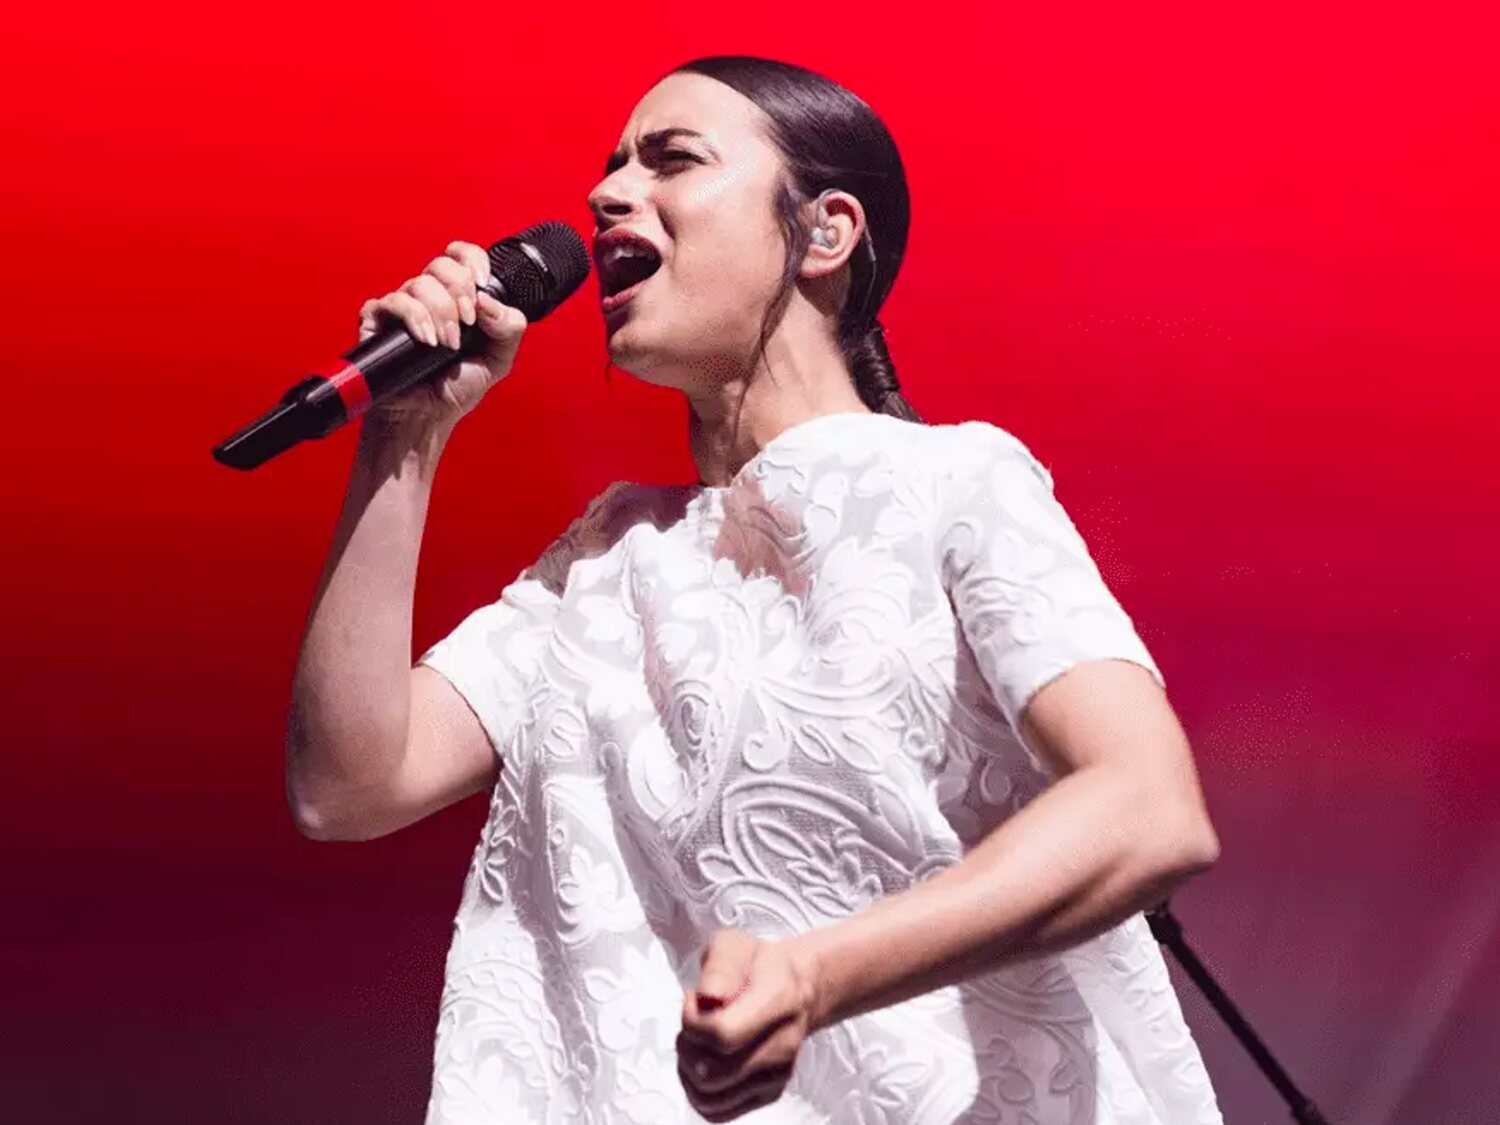 El puesto en el que quedará Blanca Paloma en Eurovisión 2023, según un algoritmo matemático